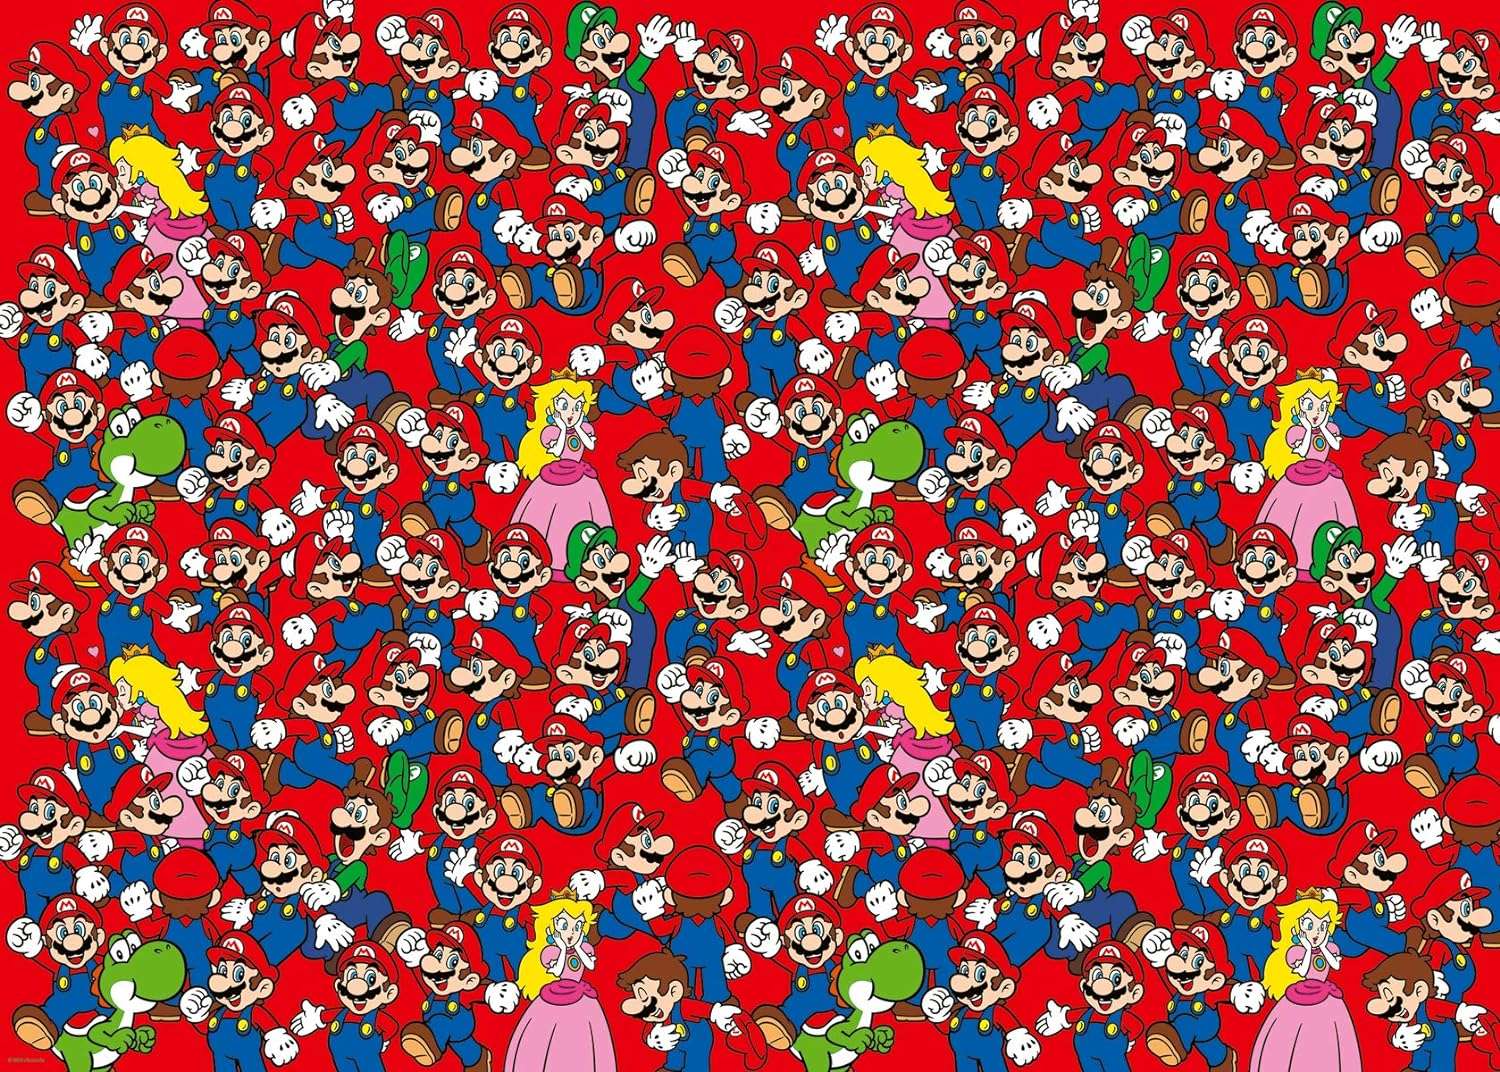 Super Mario puzzle online din fotografie